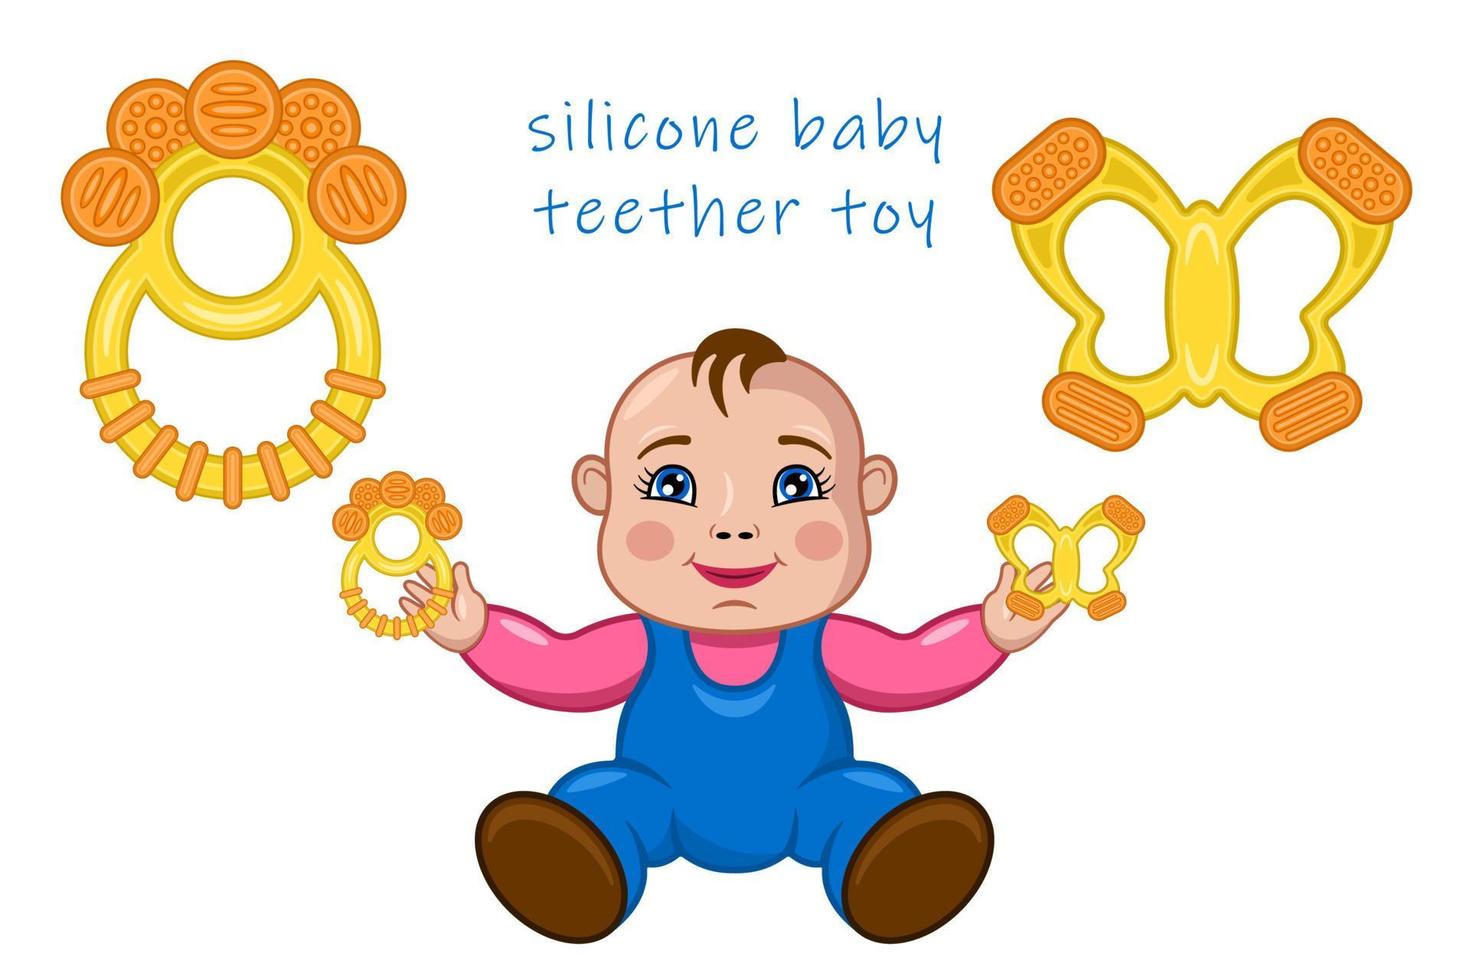 ensemble de jouets de dentition pour bébé en silicone dessin animé réaliste isolé vecteur